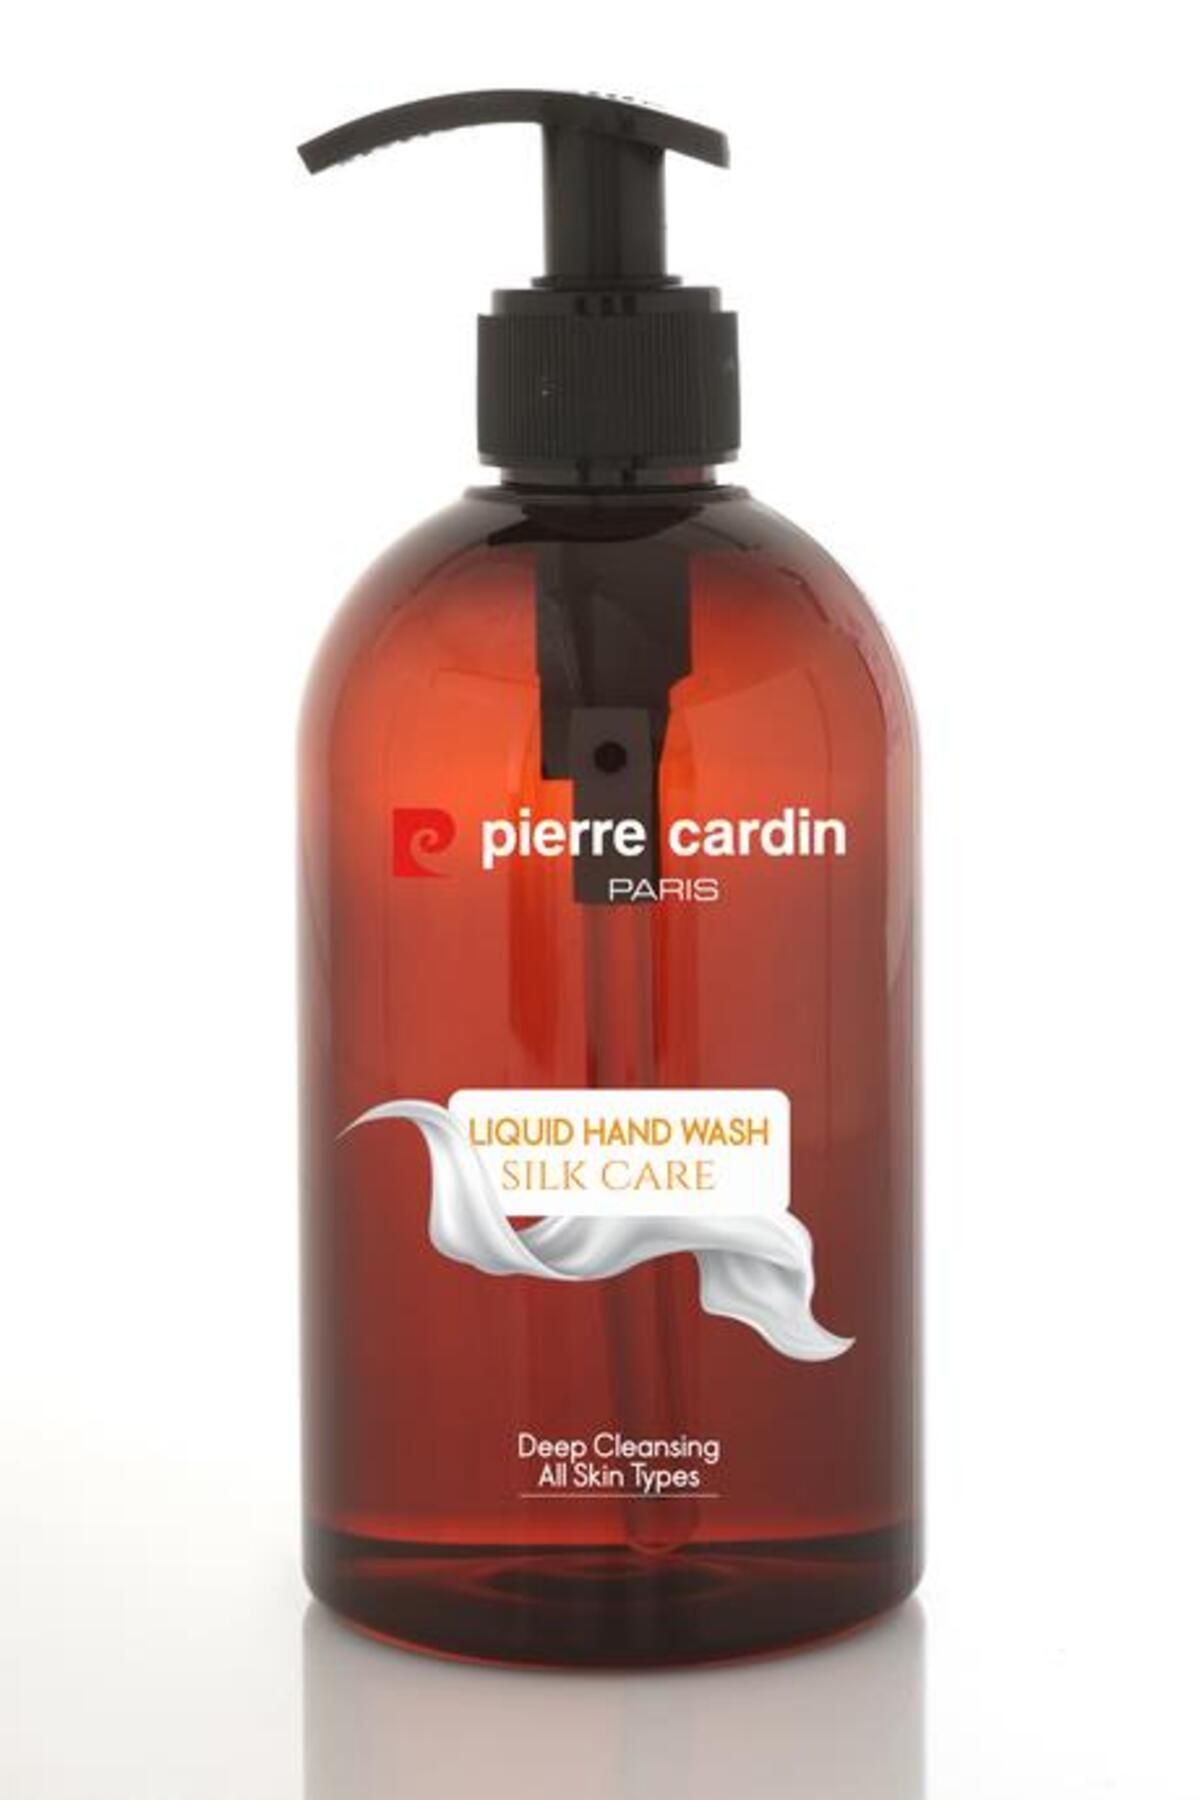 Pierre Cardin Liquid Hand Wash 480 ml – Silk Care - Sıvı Sabun - Ipek Bakım